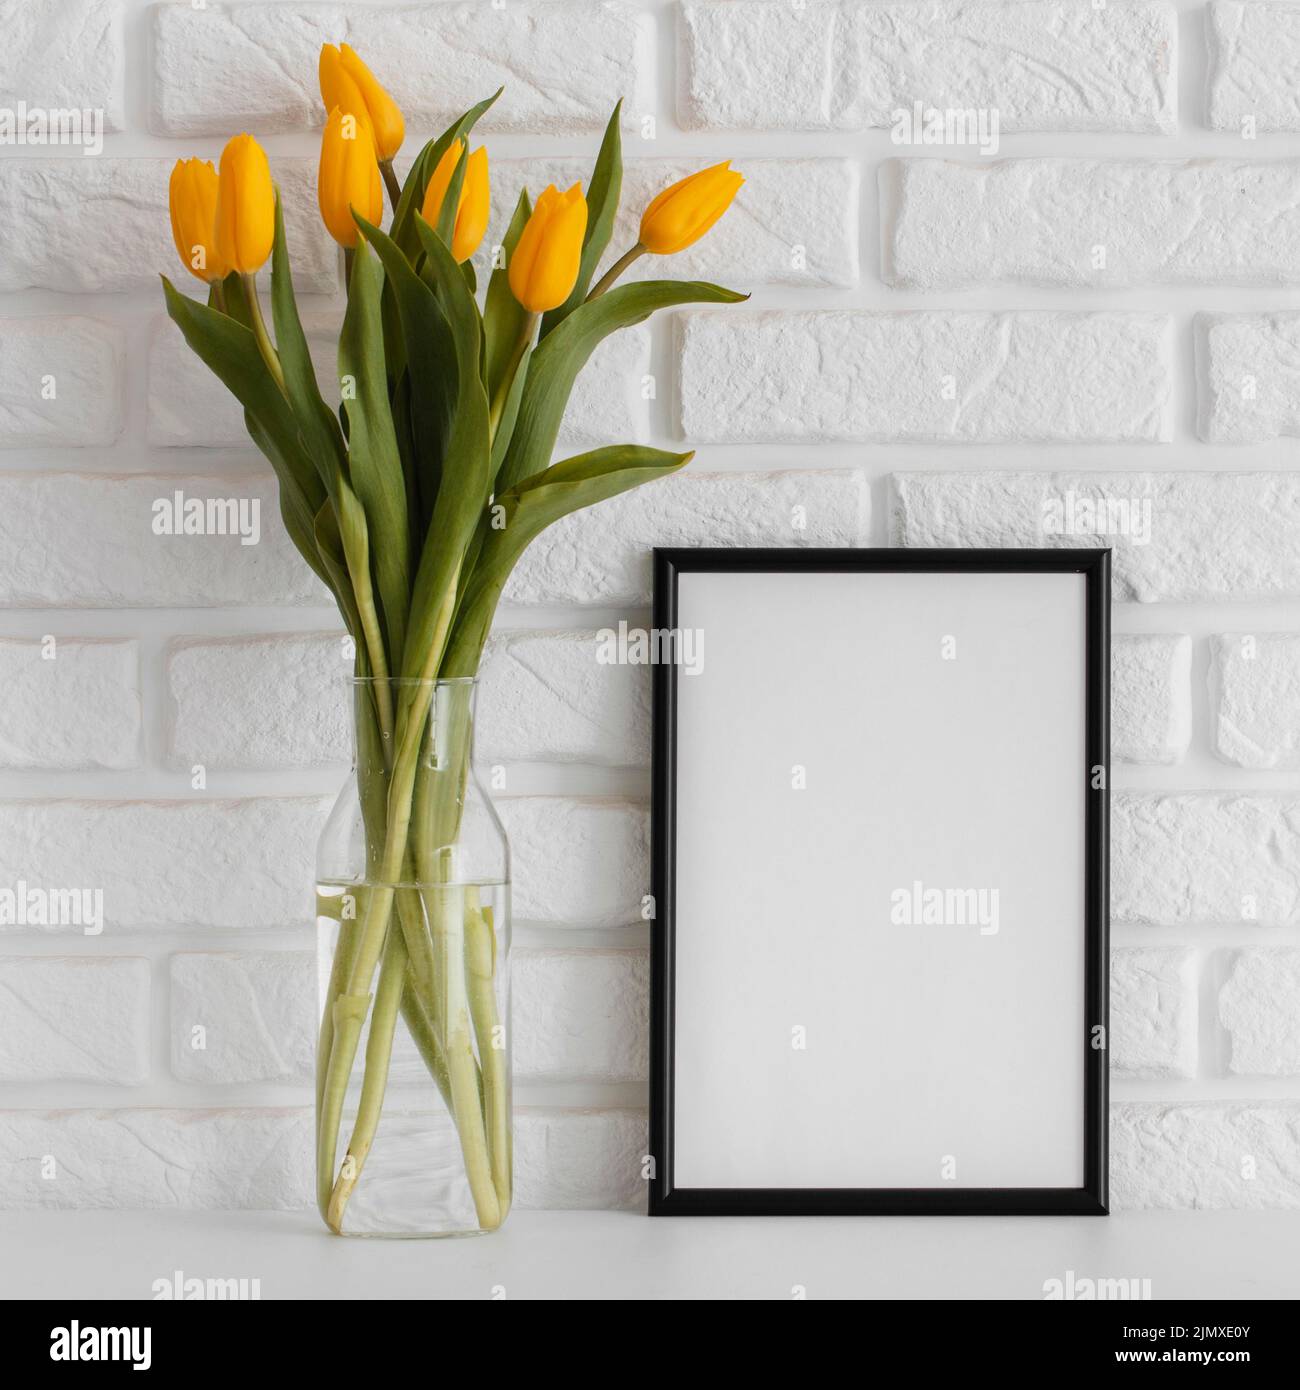 Bouquet tulipes vase transparent avec cadre vide Banque D'Images